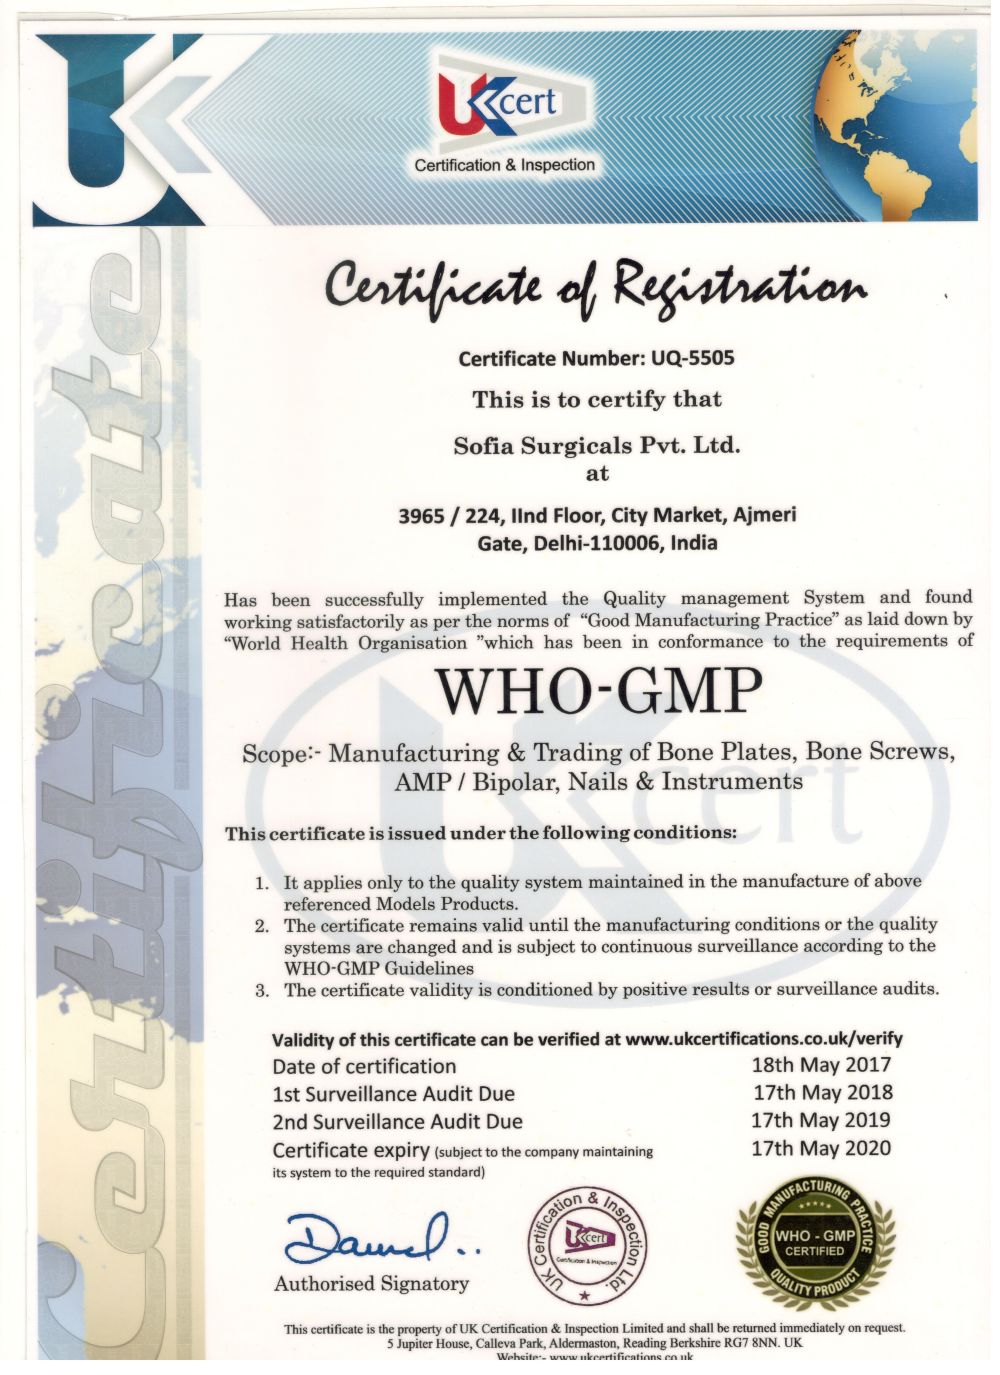 WHO-GMP Certificate